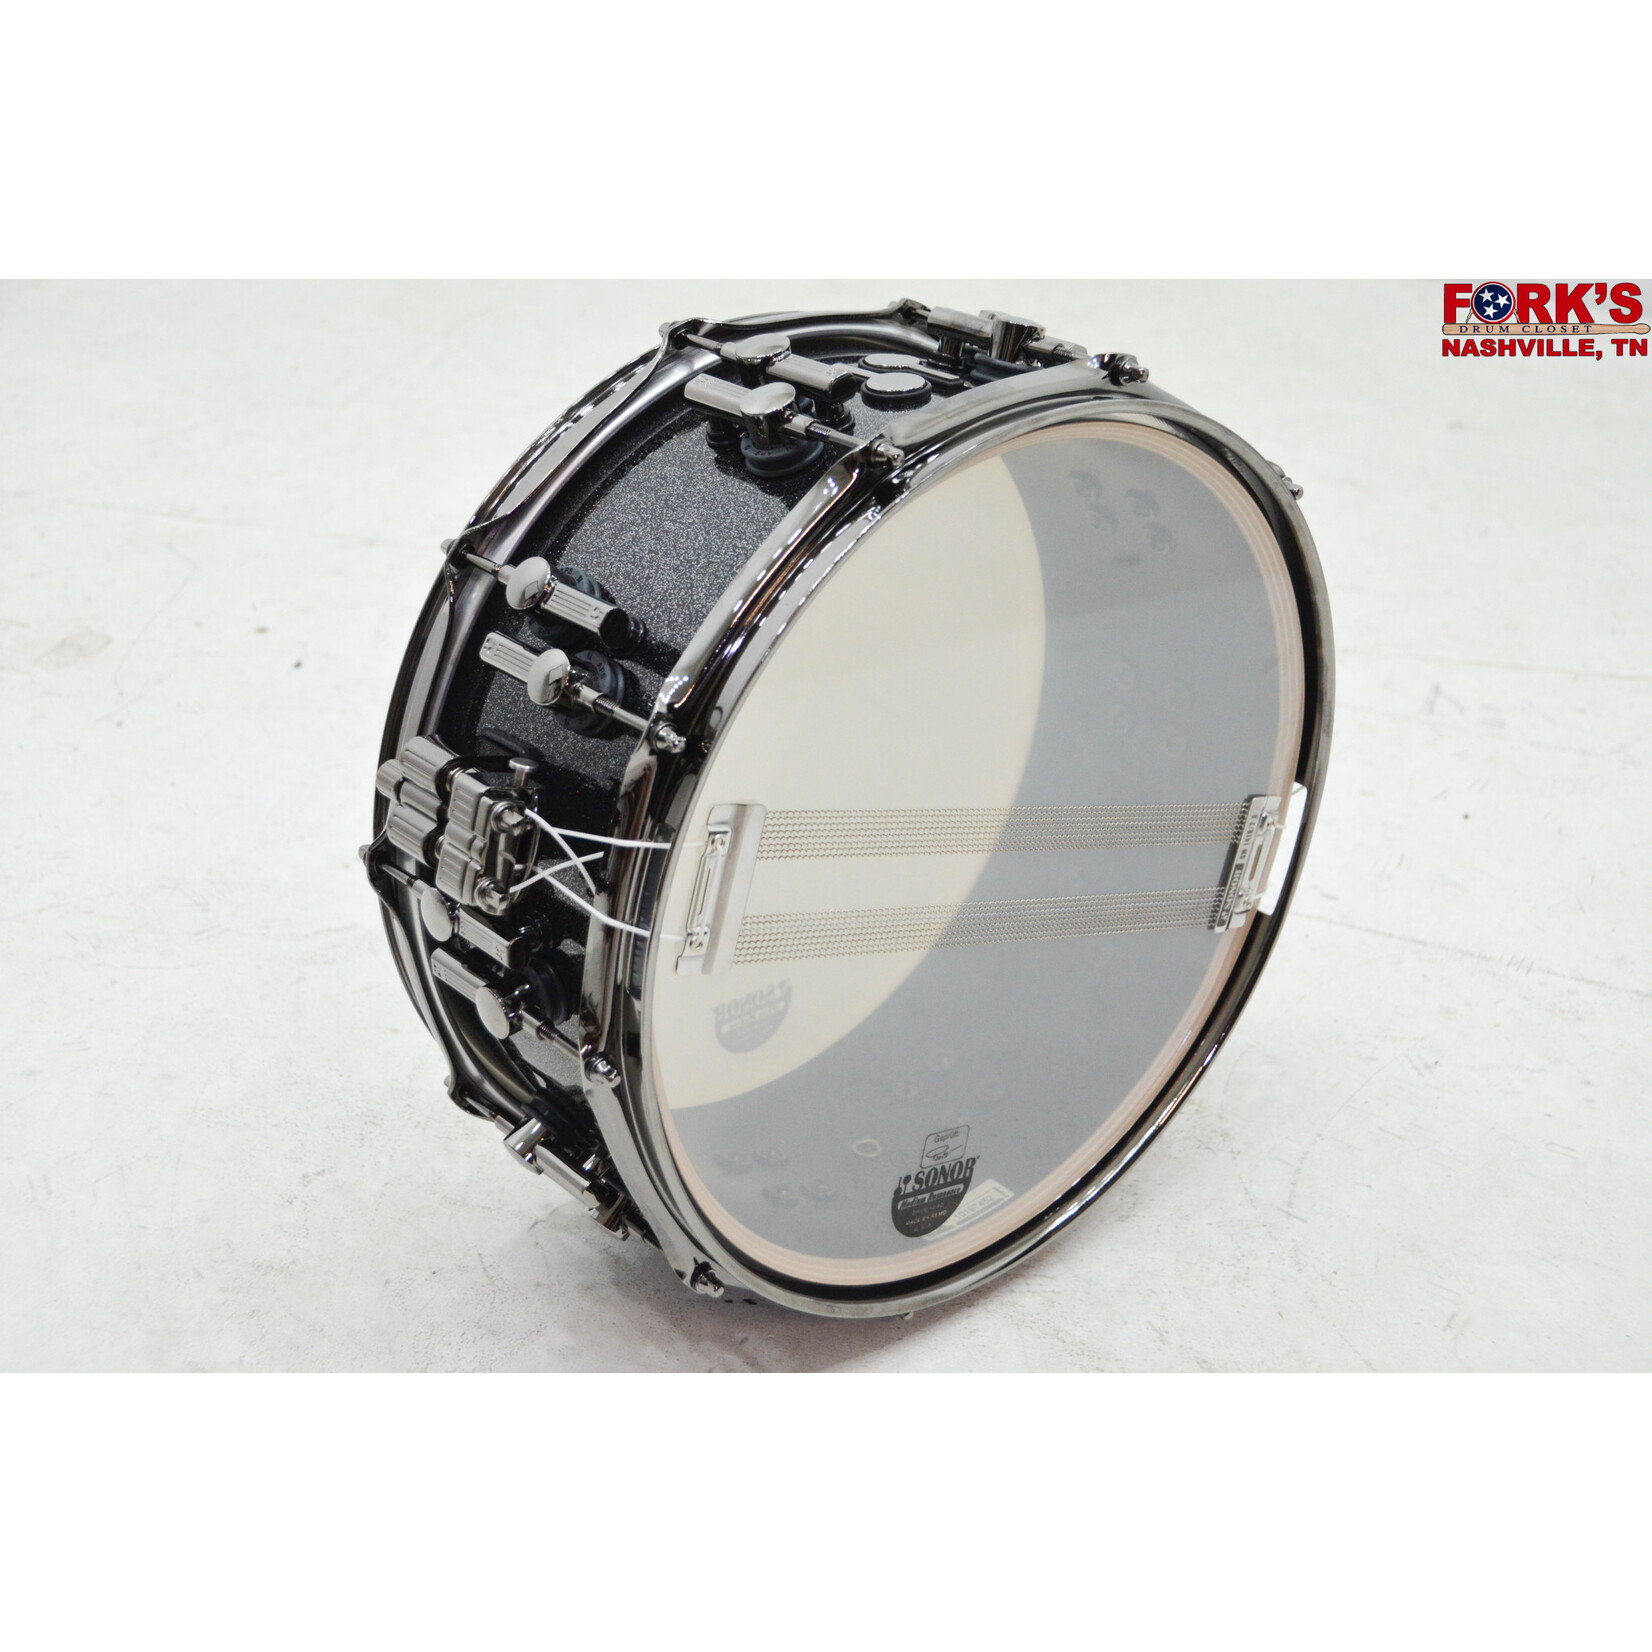 Sonor Sonor SQ2 Heavy Maple 6x14 Snare Drum "Black Sparkle Lacquer"